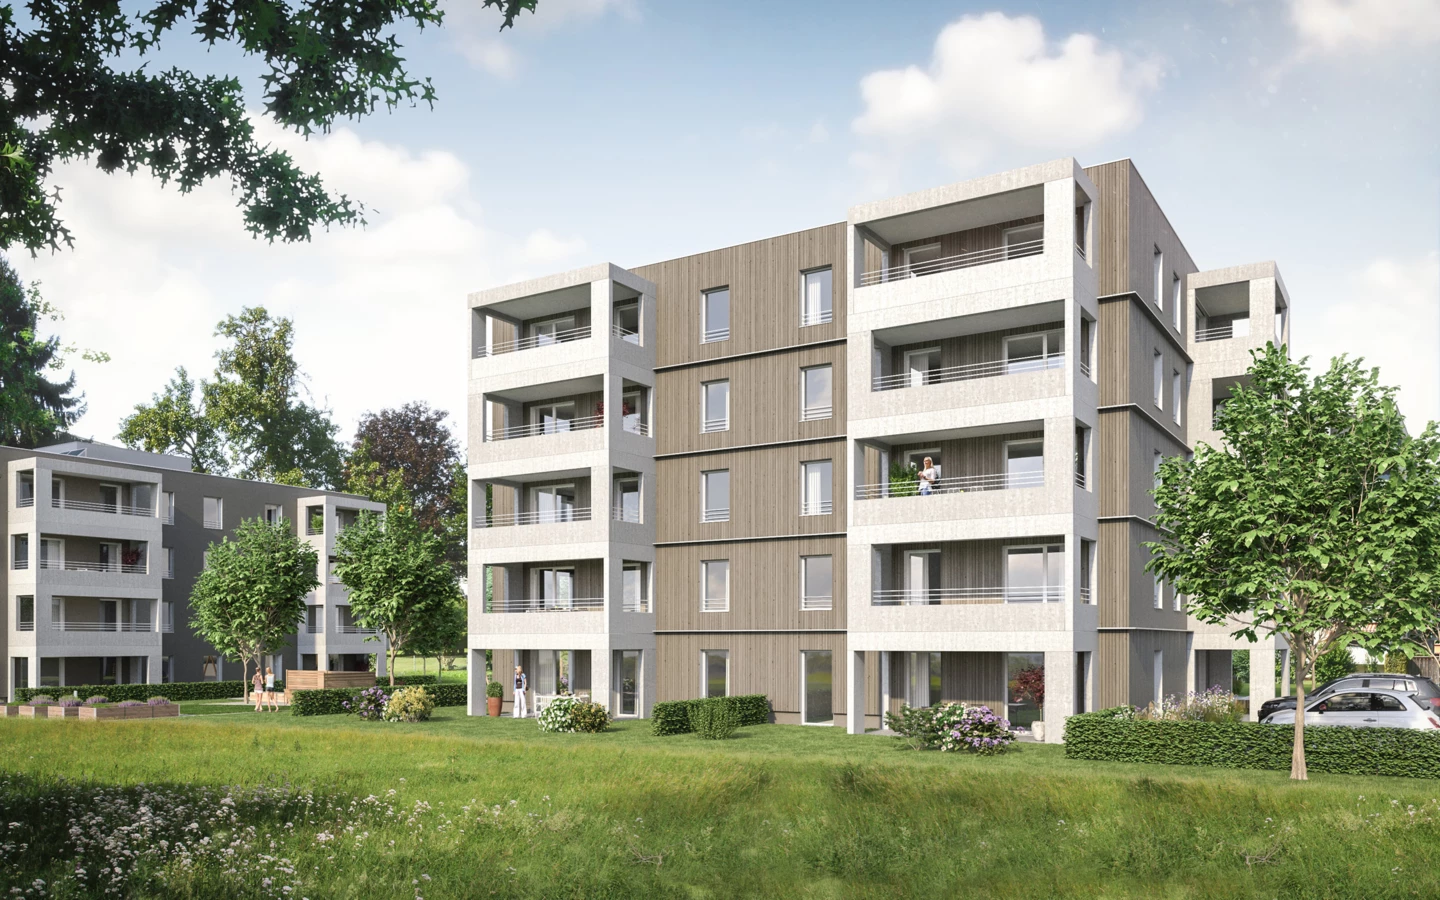 Visualisierung des visionären Projekts von Rhomberg Bau und Wohnbauselbsthilfe in Wolfurt: In der Lerchenstraße entstehen zwei weitgehend identische Wohnhäuser - eines in Massivbauweise, eines komplett in Holz.